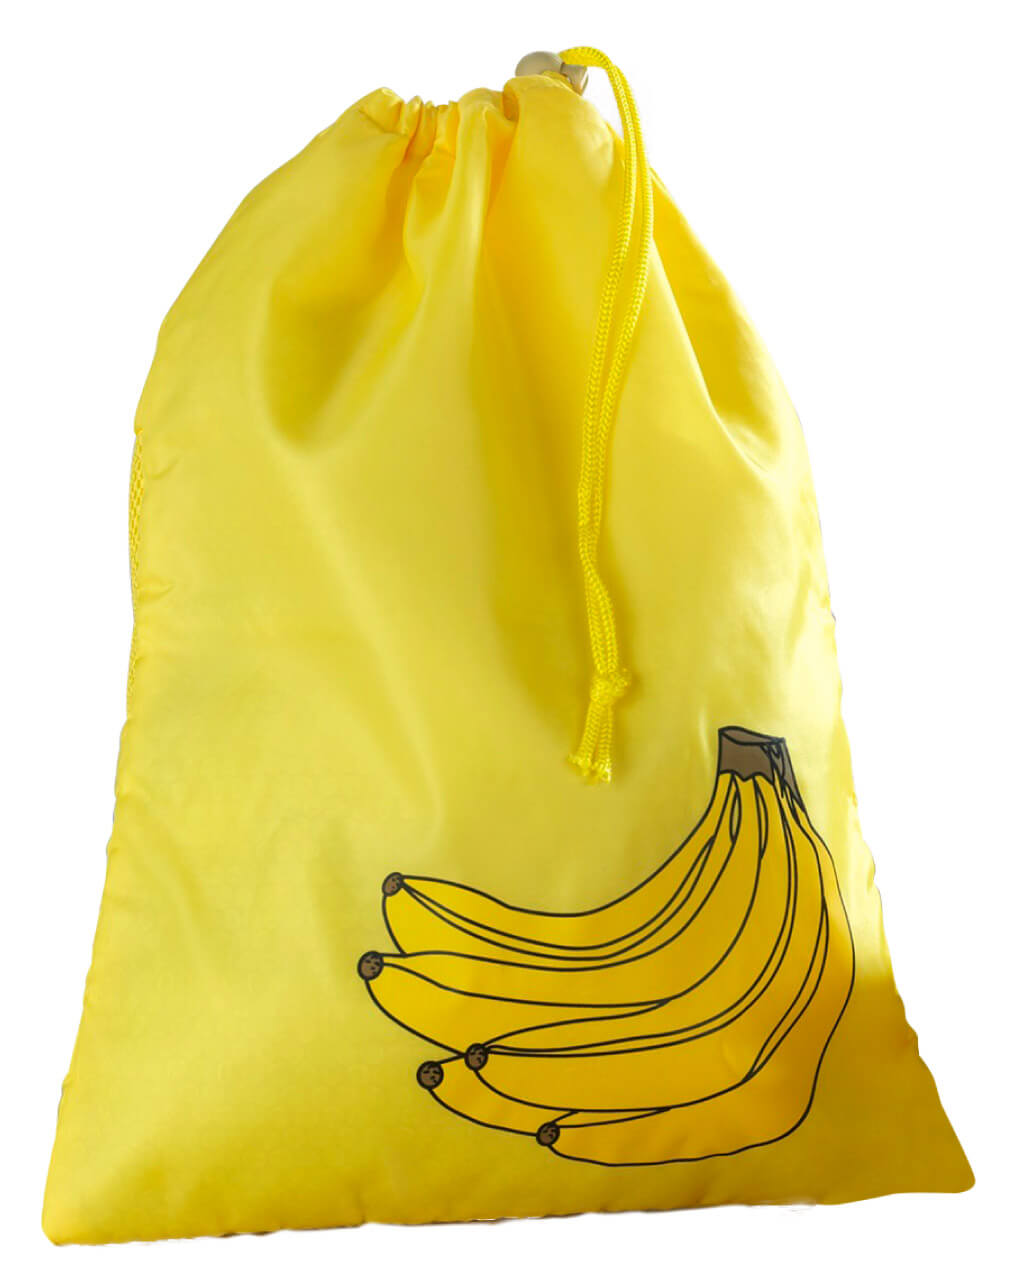 Frischhaltebeutel für Bananen